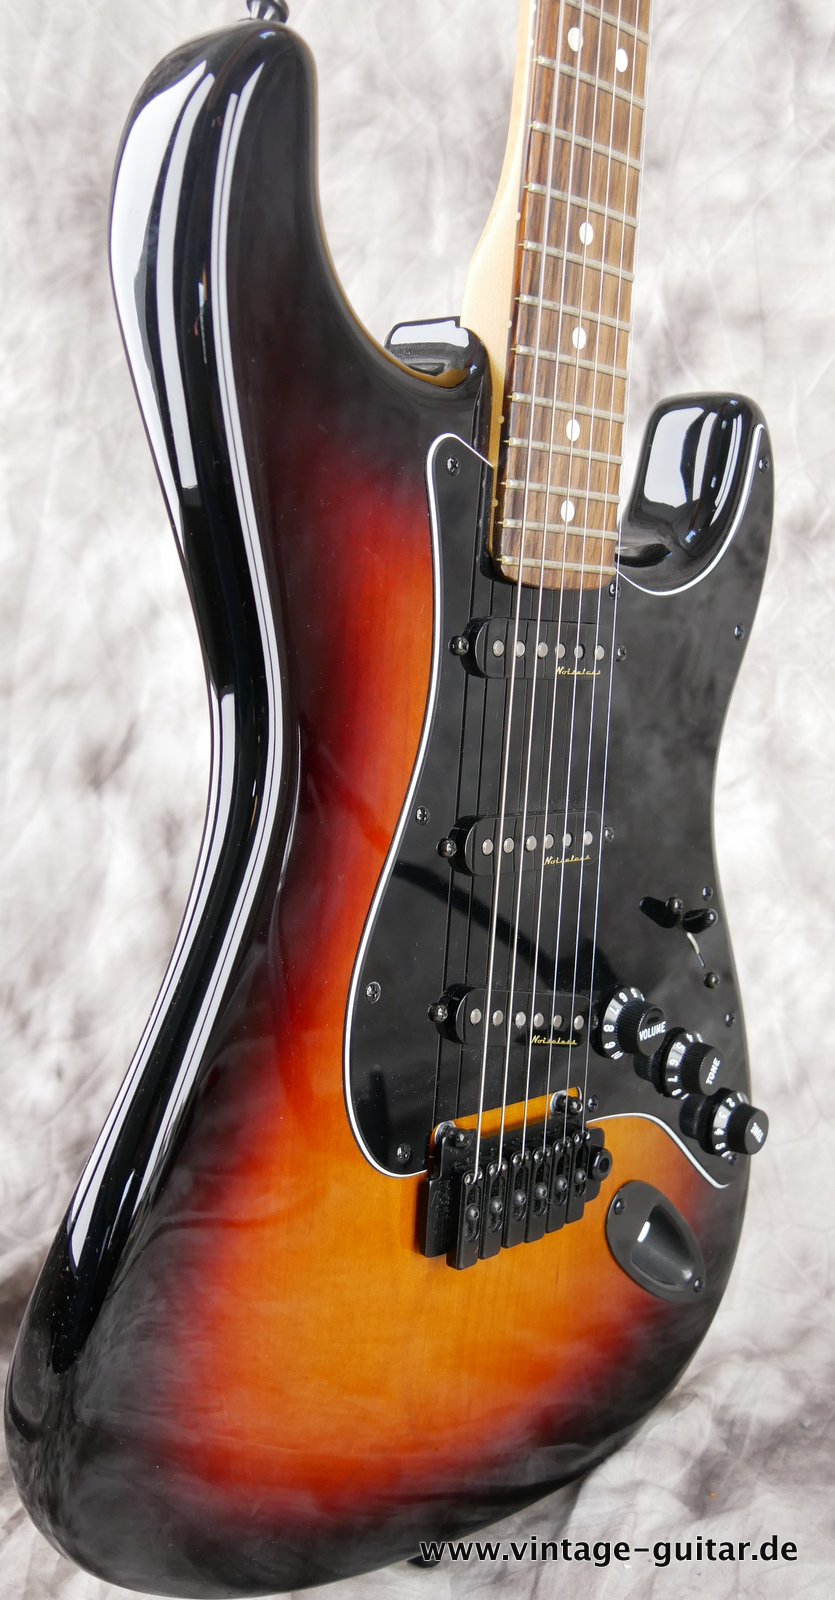 img/vintage/4765/Fender-Stratocaster-2014-US-Standard-black-hardware-005.JPG